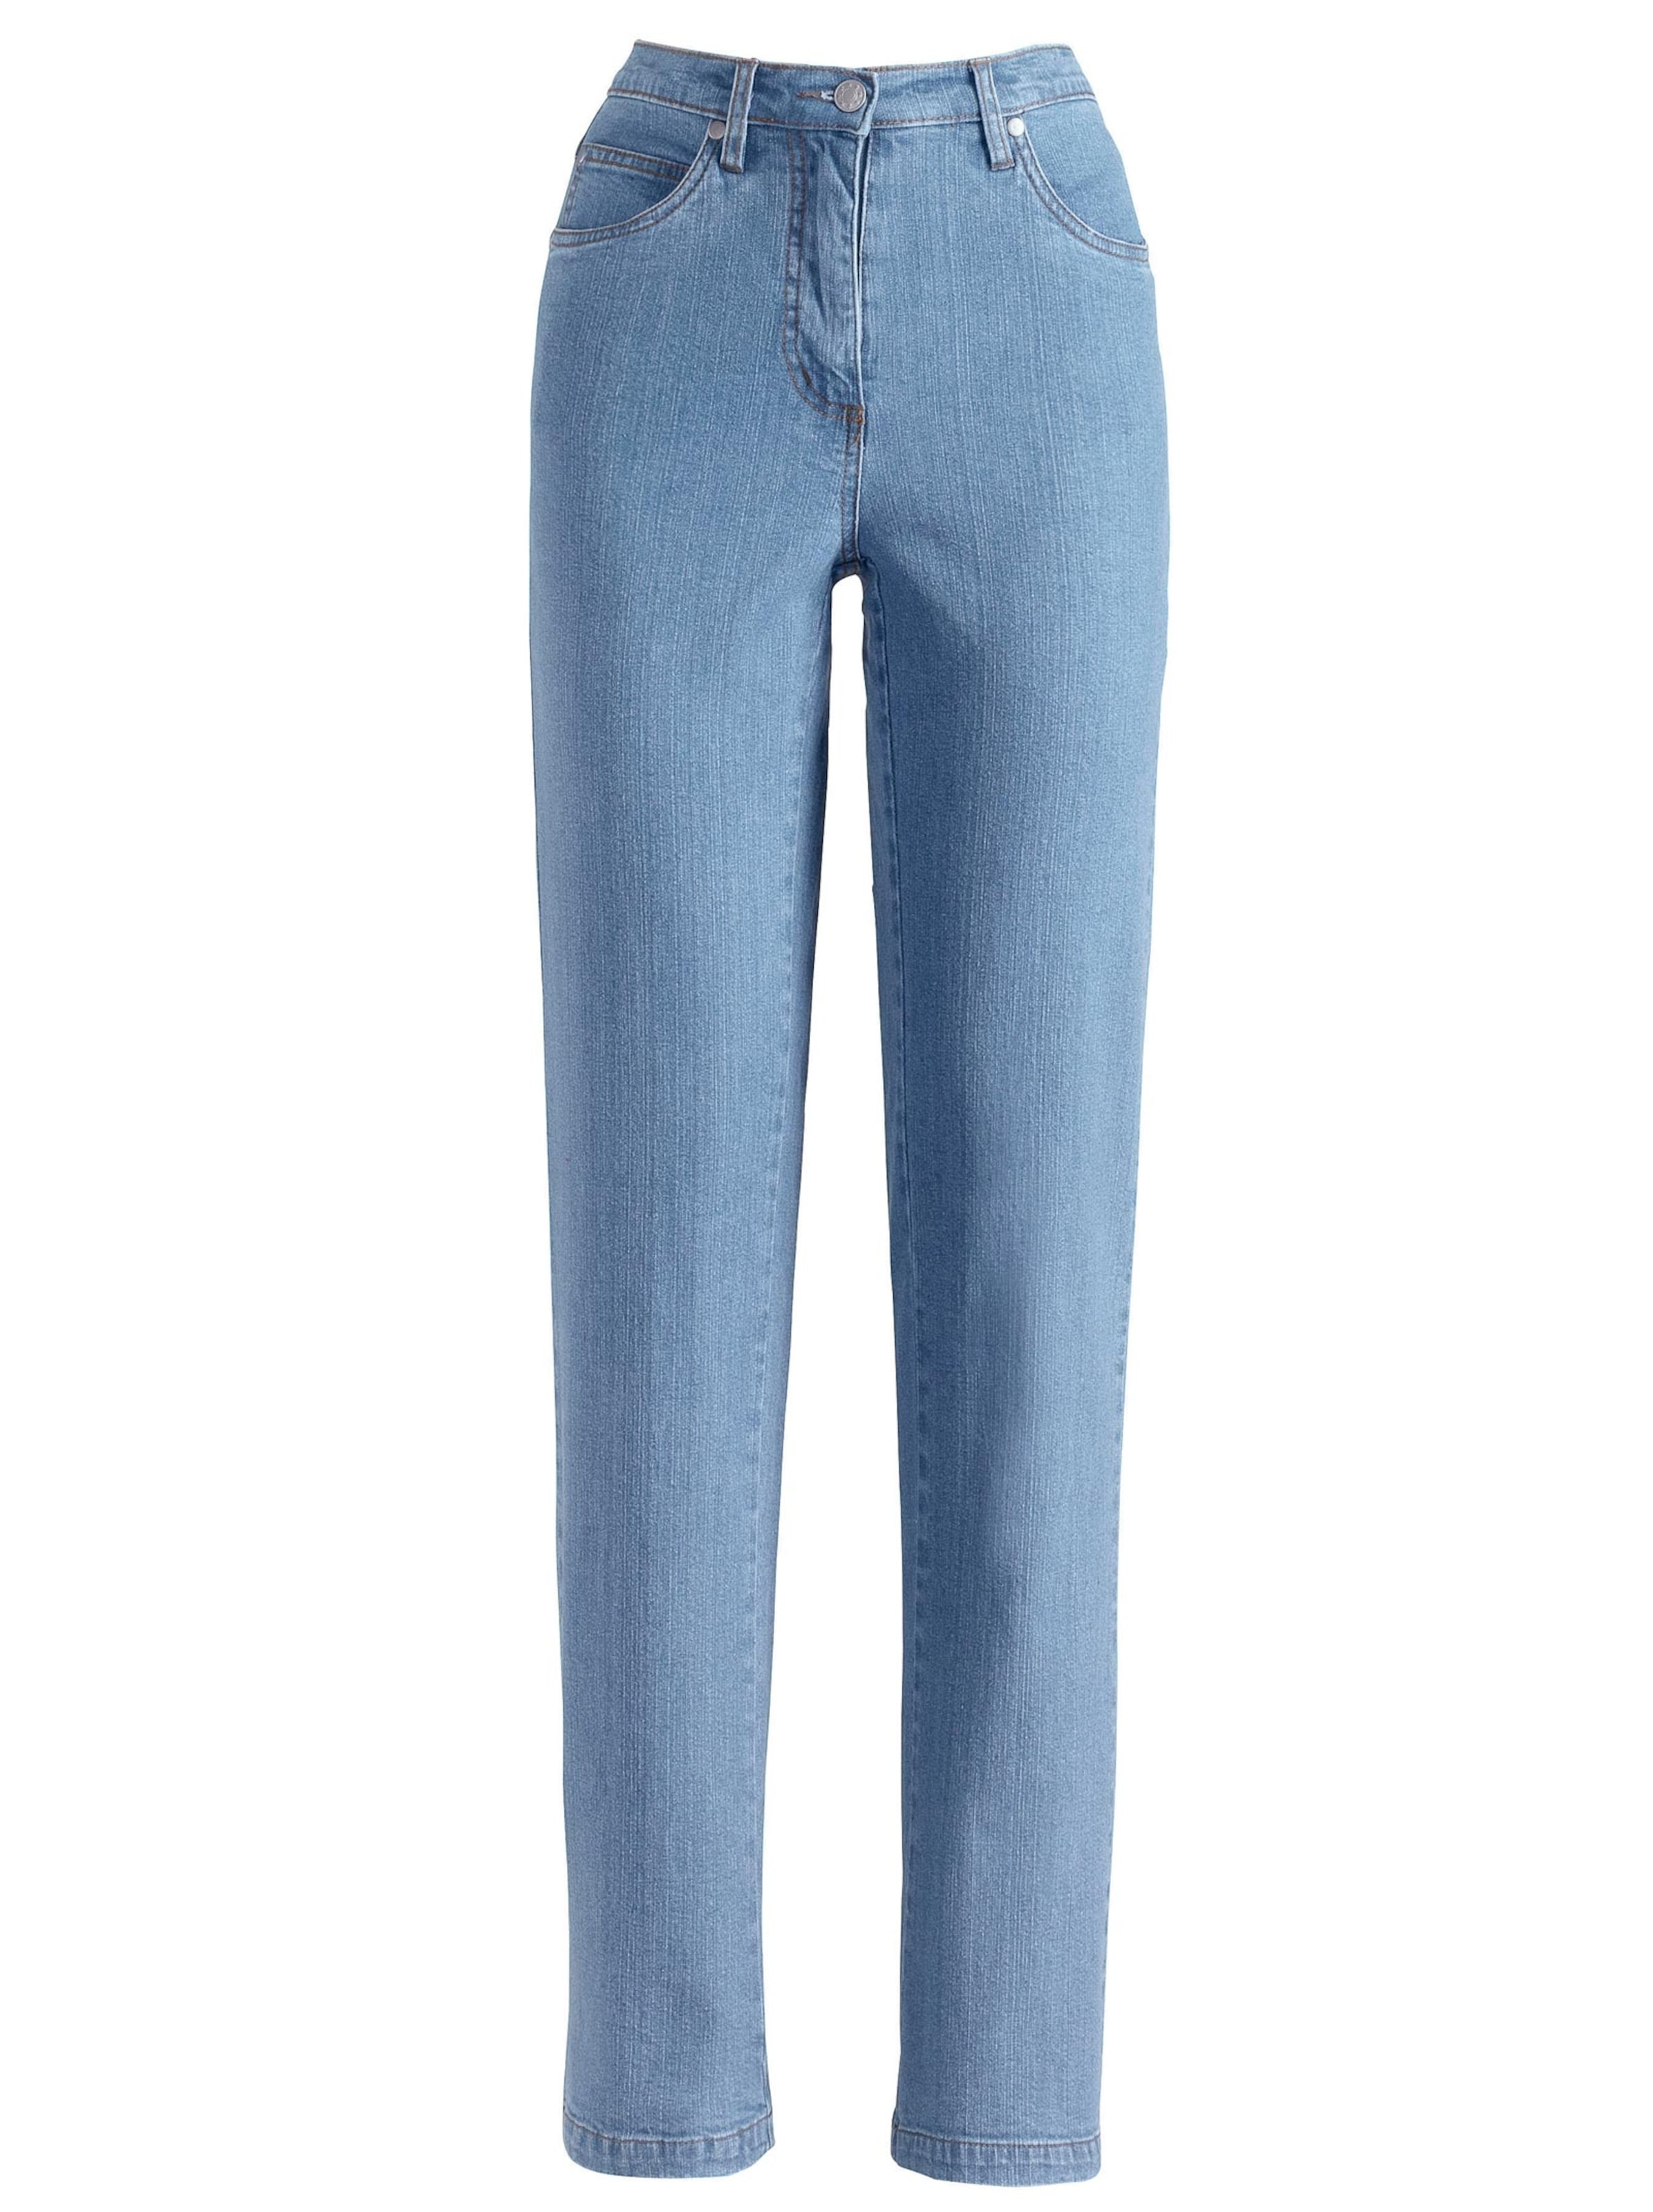 Damenmode Jeans 5-Pocket-Jeans in blue-bleached 